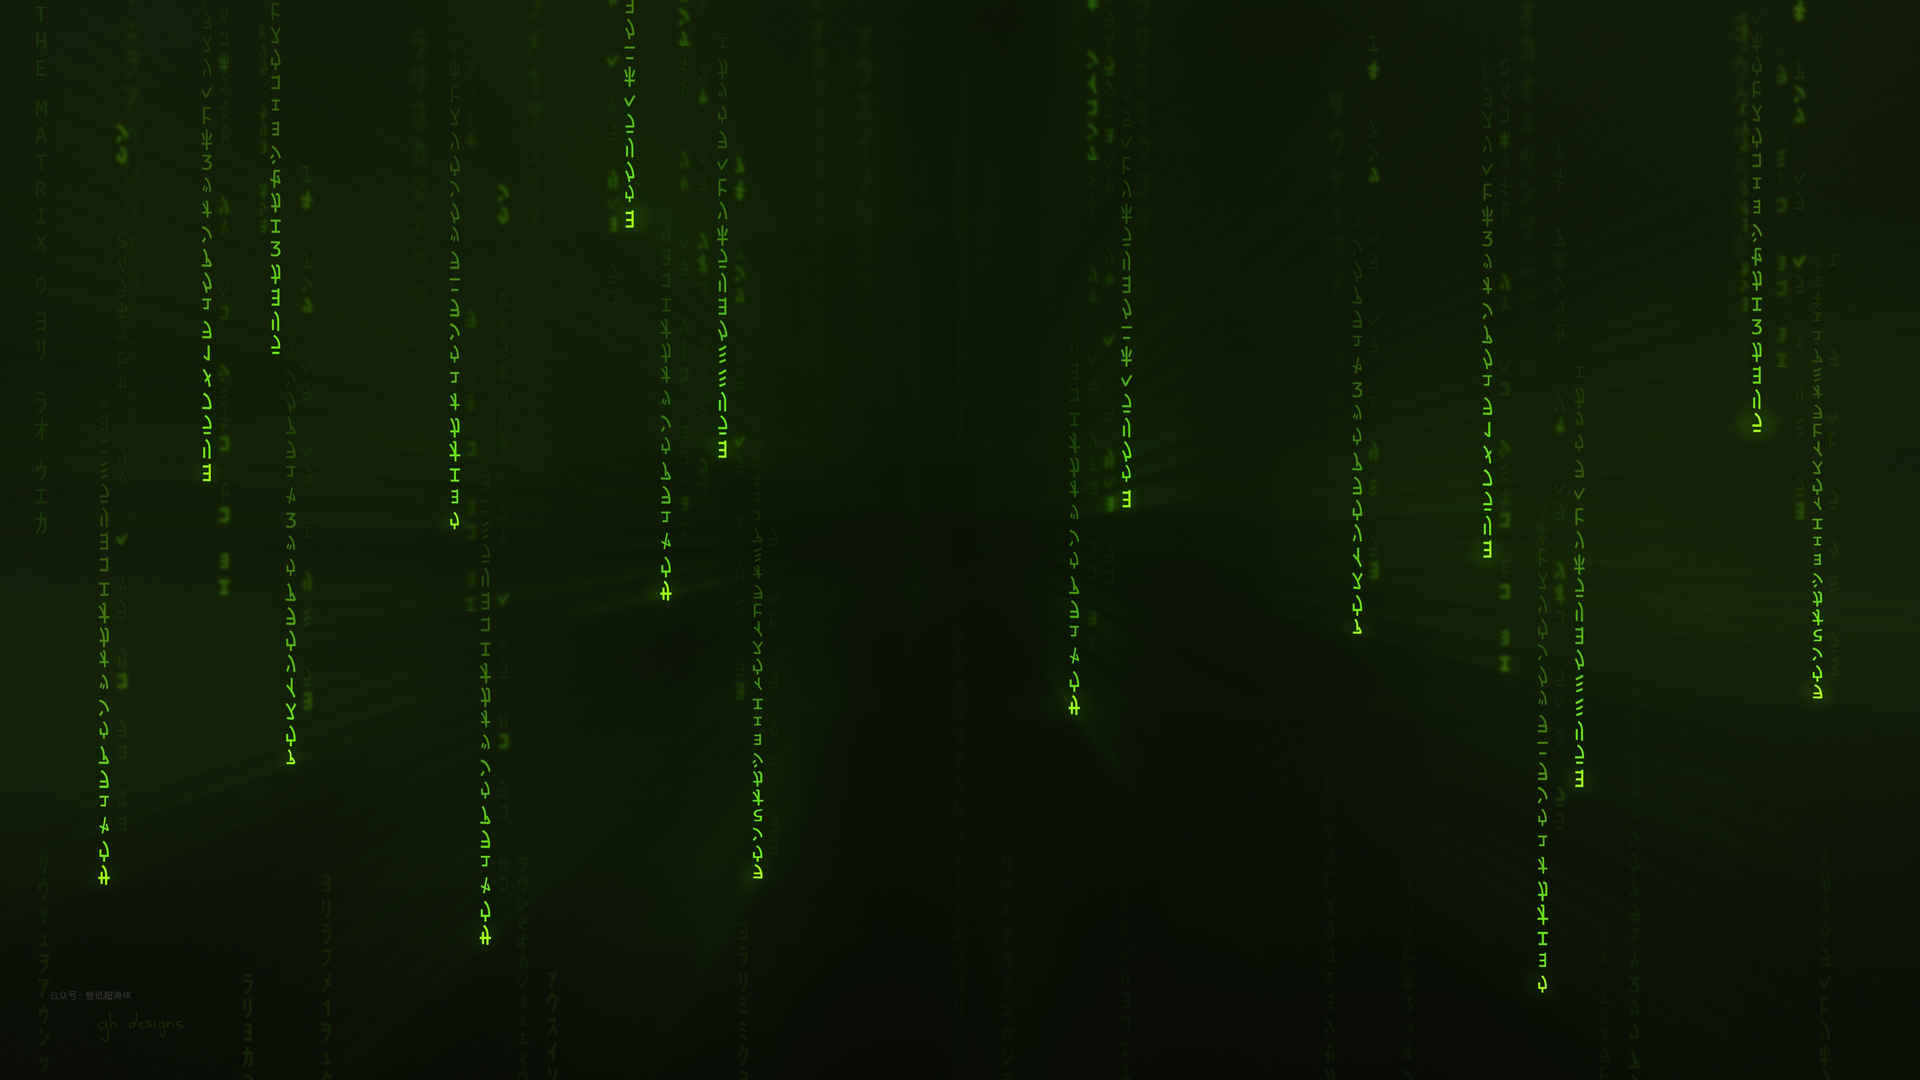 黑客帝国:矩阵重启 绿色编码背景壁纸-